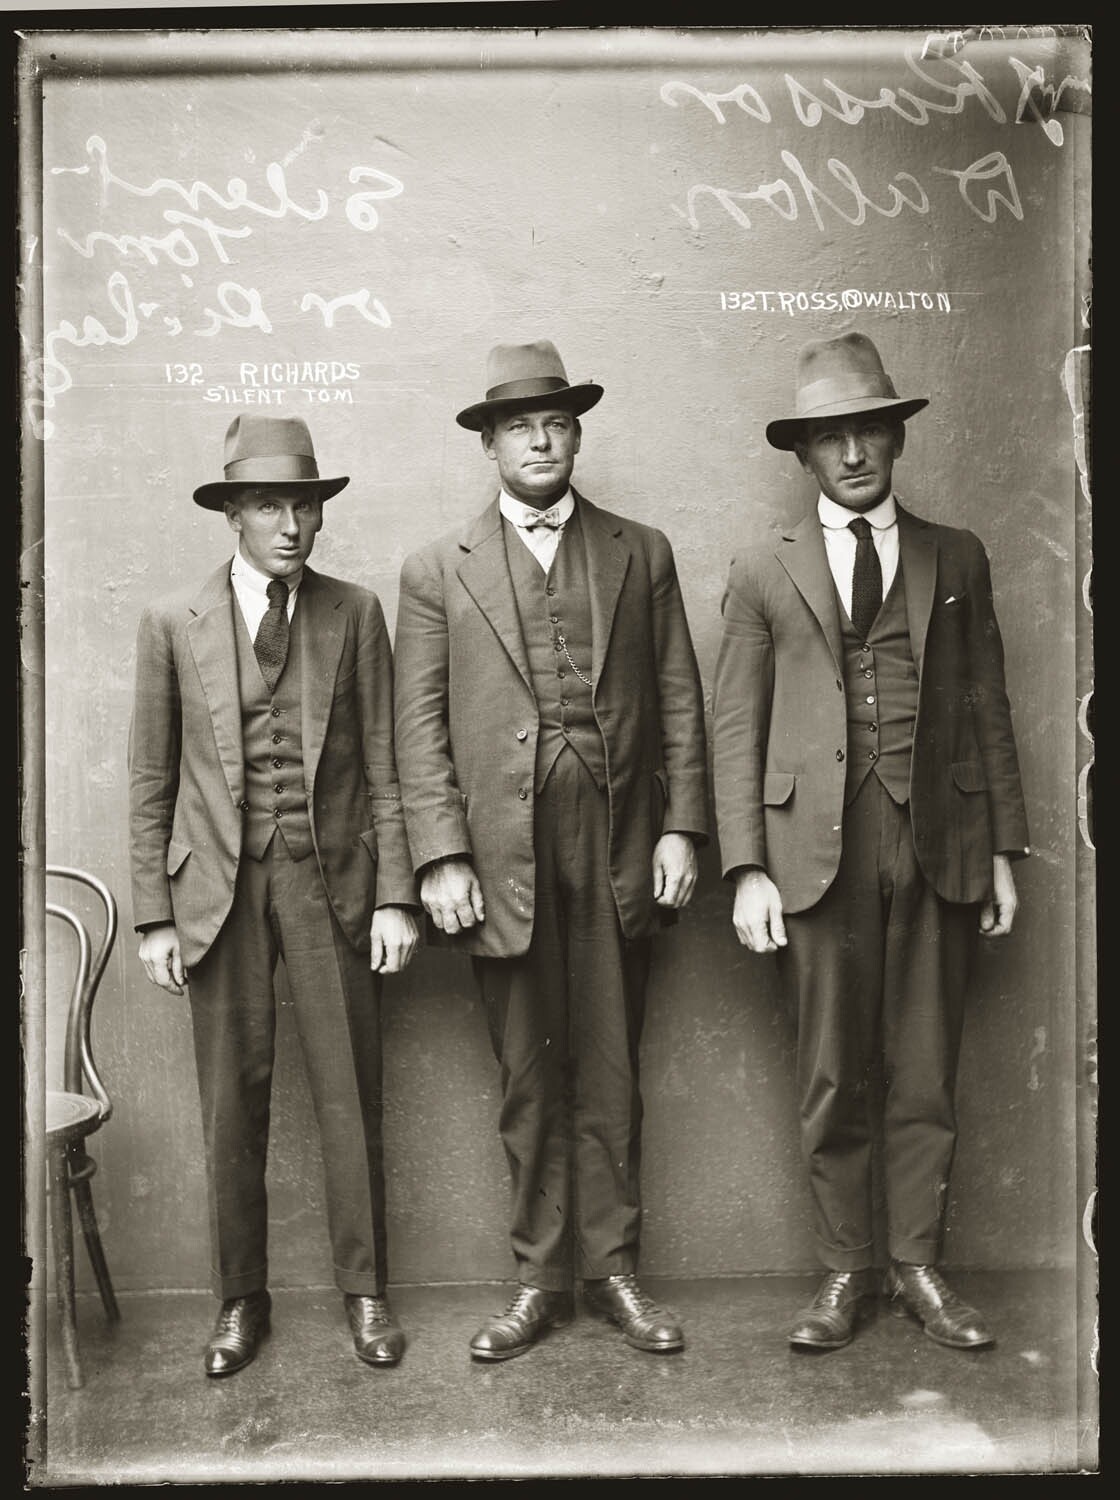 Молчаливый Том Ричардс и Т. Росс, псевдоним Уолтон, 1920 год. Архив судебной фотографии полиции Нового Южного Уэльса